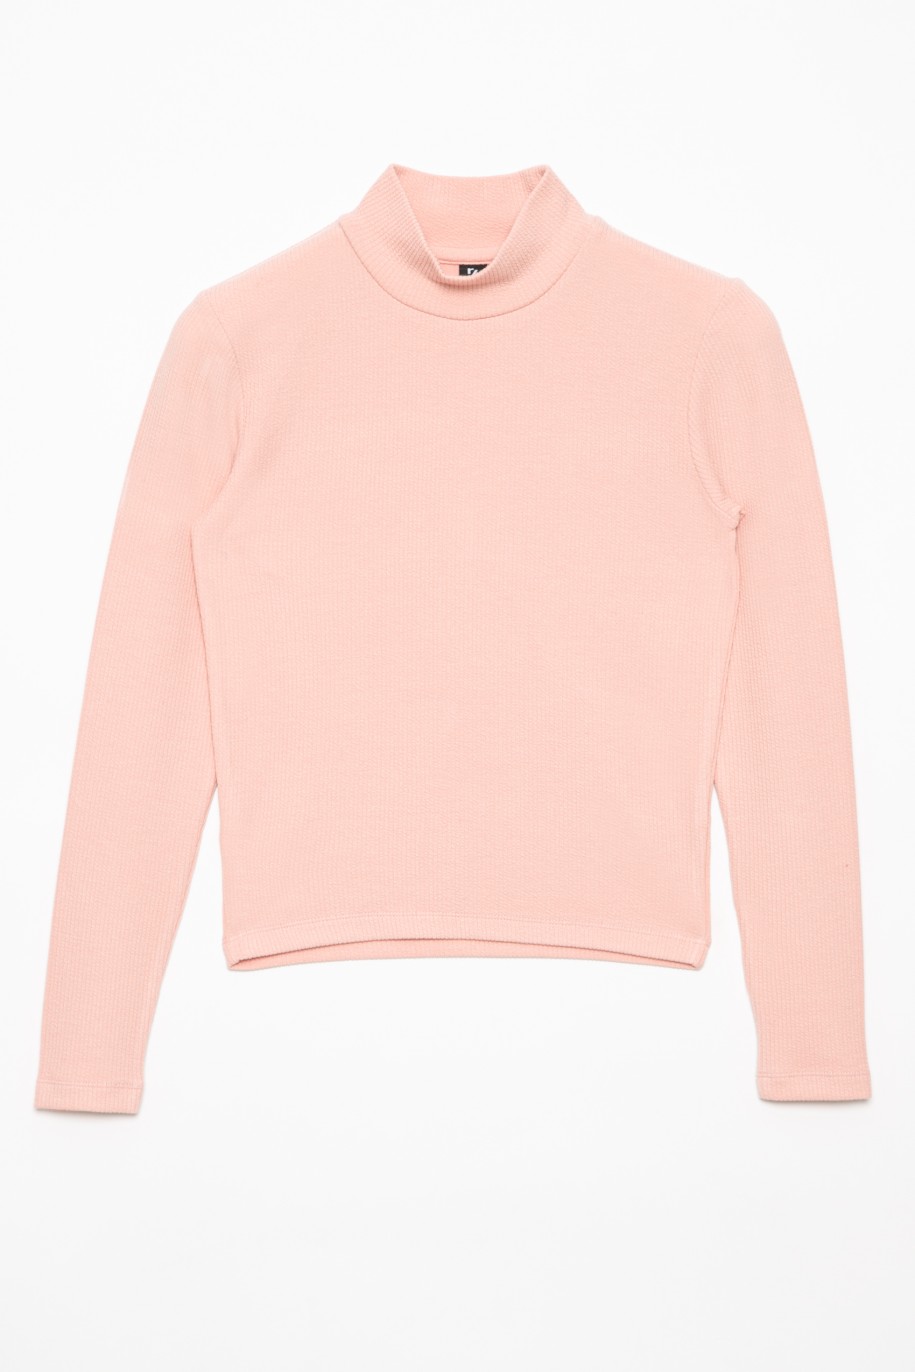 Różowa bluzka dla dziewczyny - 31690